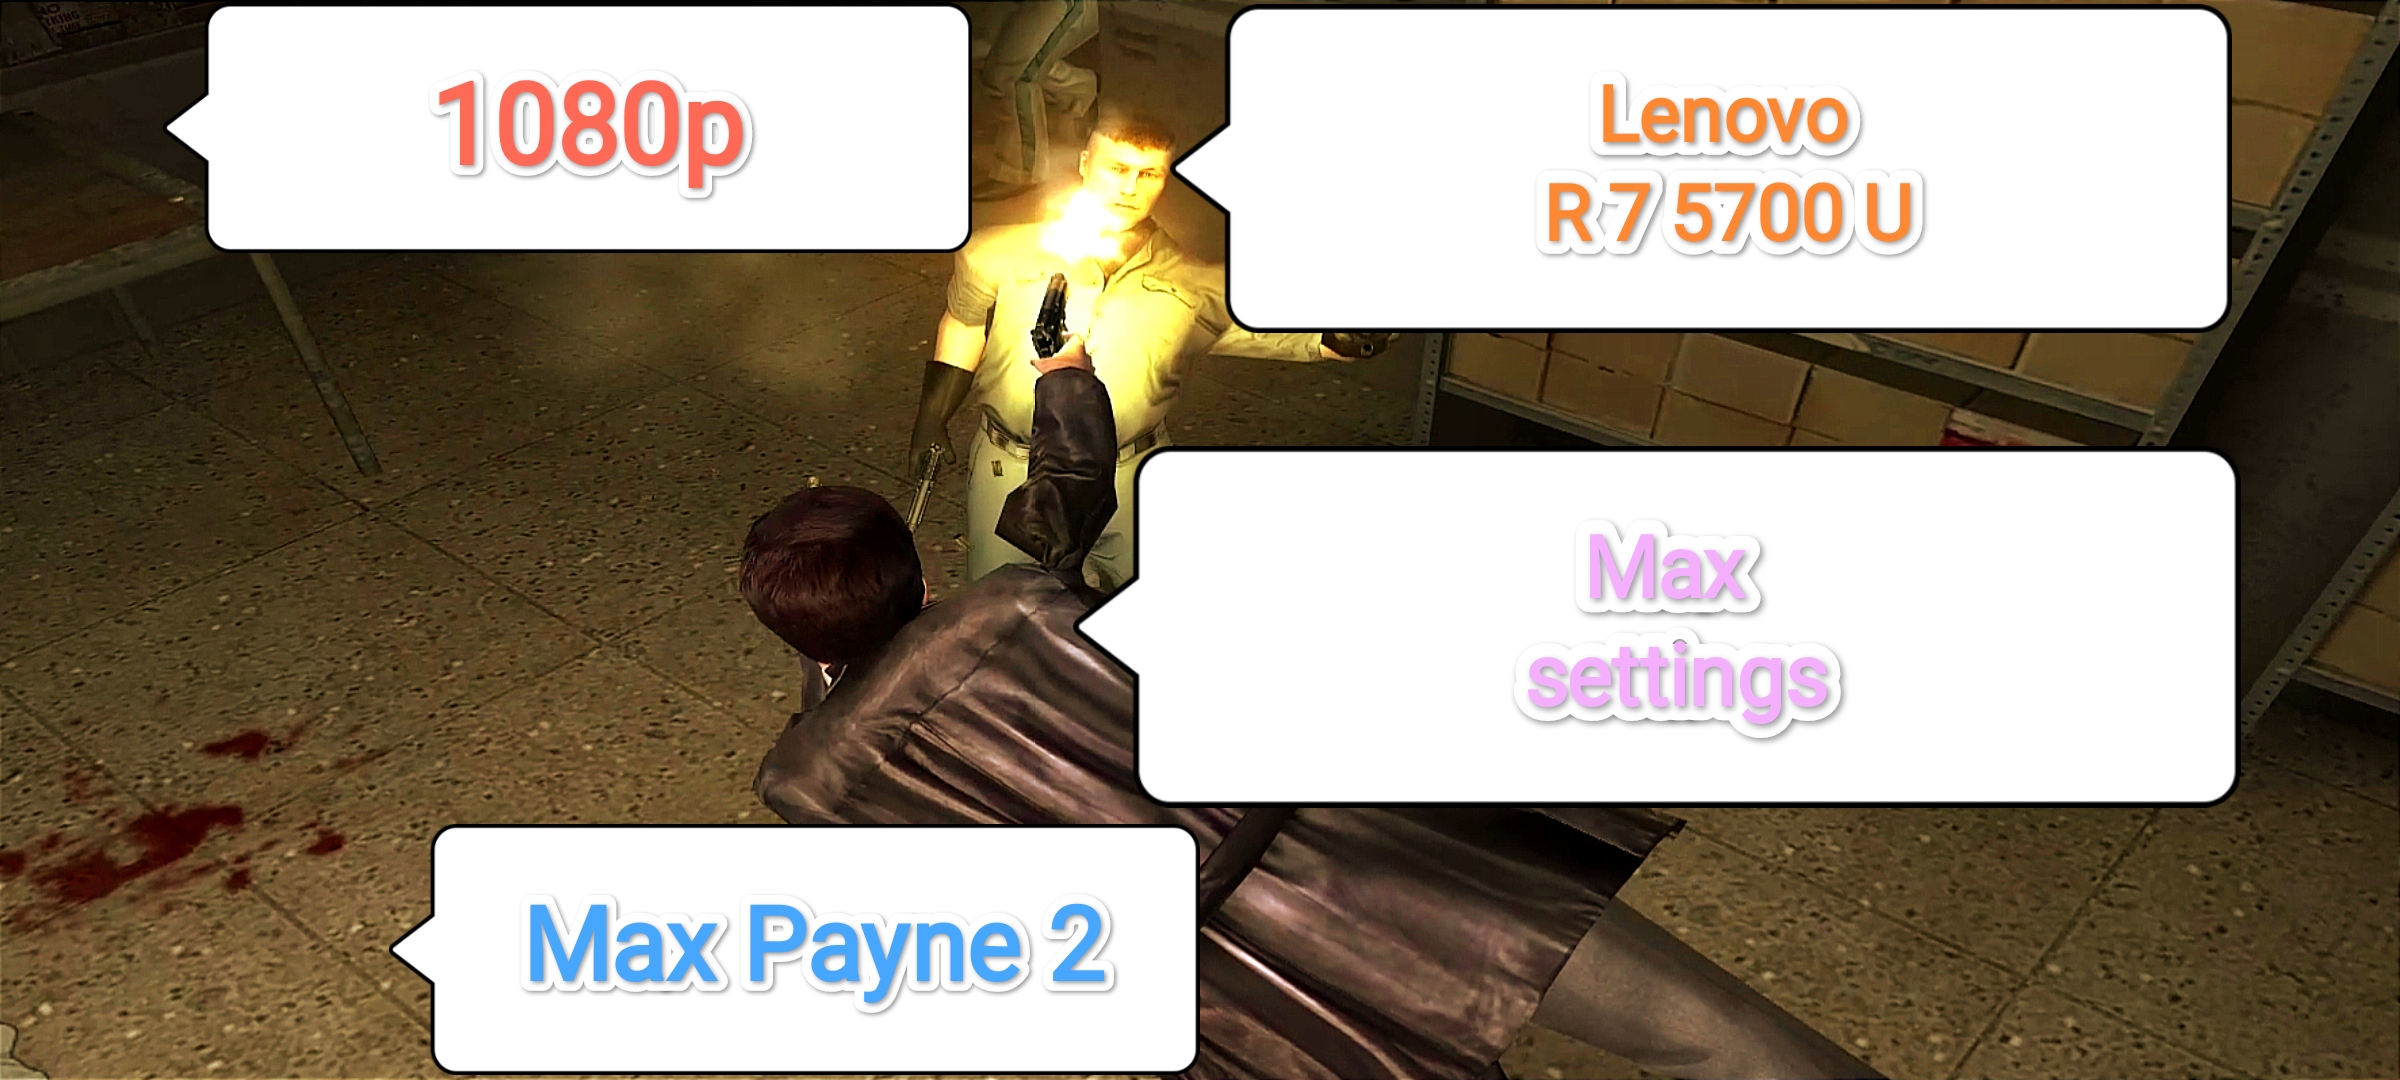 Max Payne 2 v.1.01 - максимальные настройки графики (Lenovo R 7 5700 U) ( 1080 X 1920 60fps )